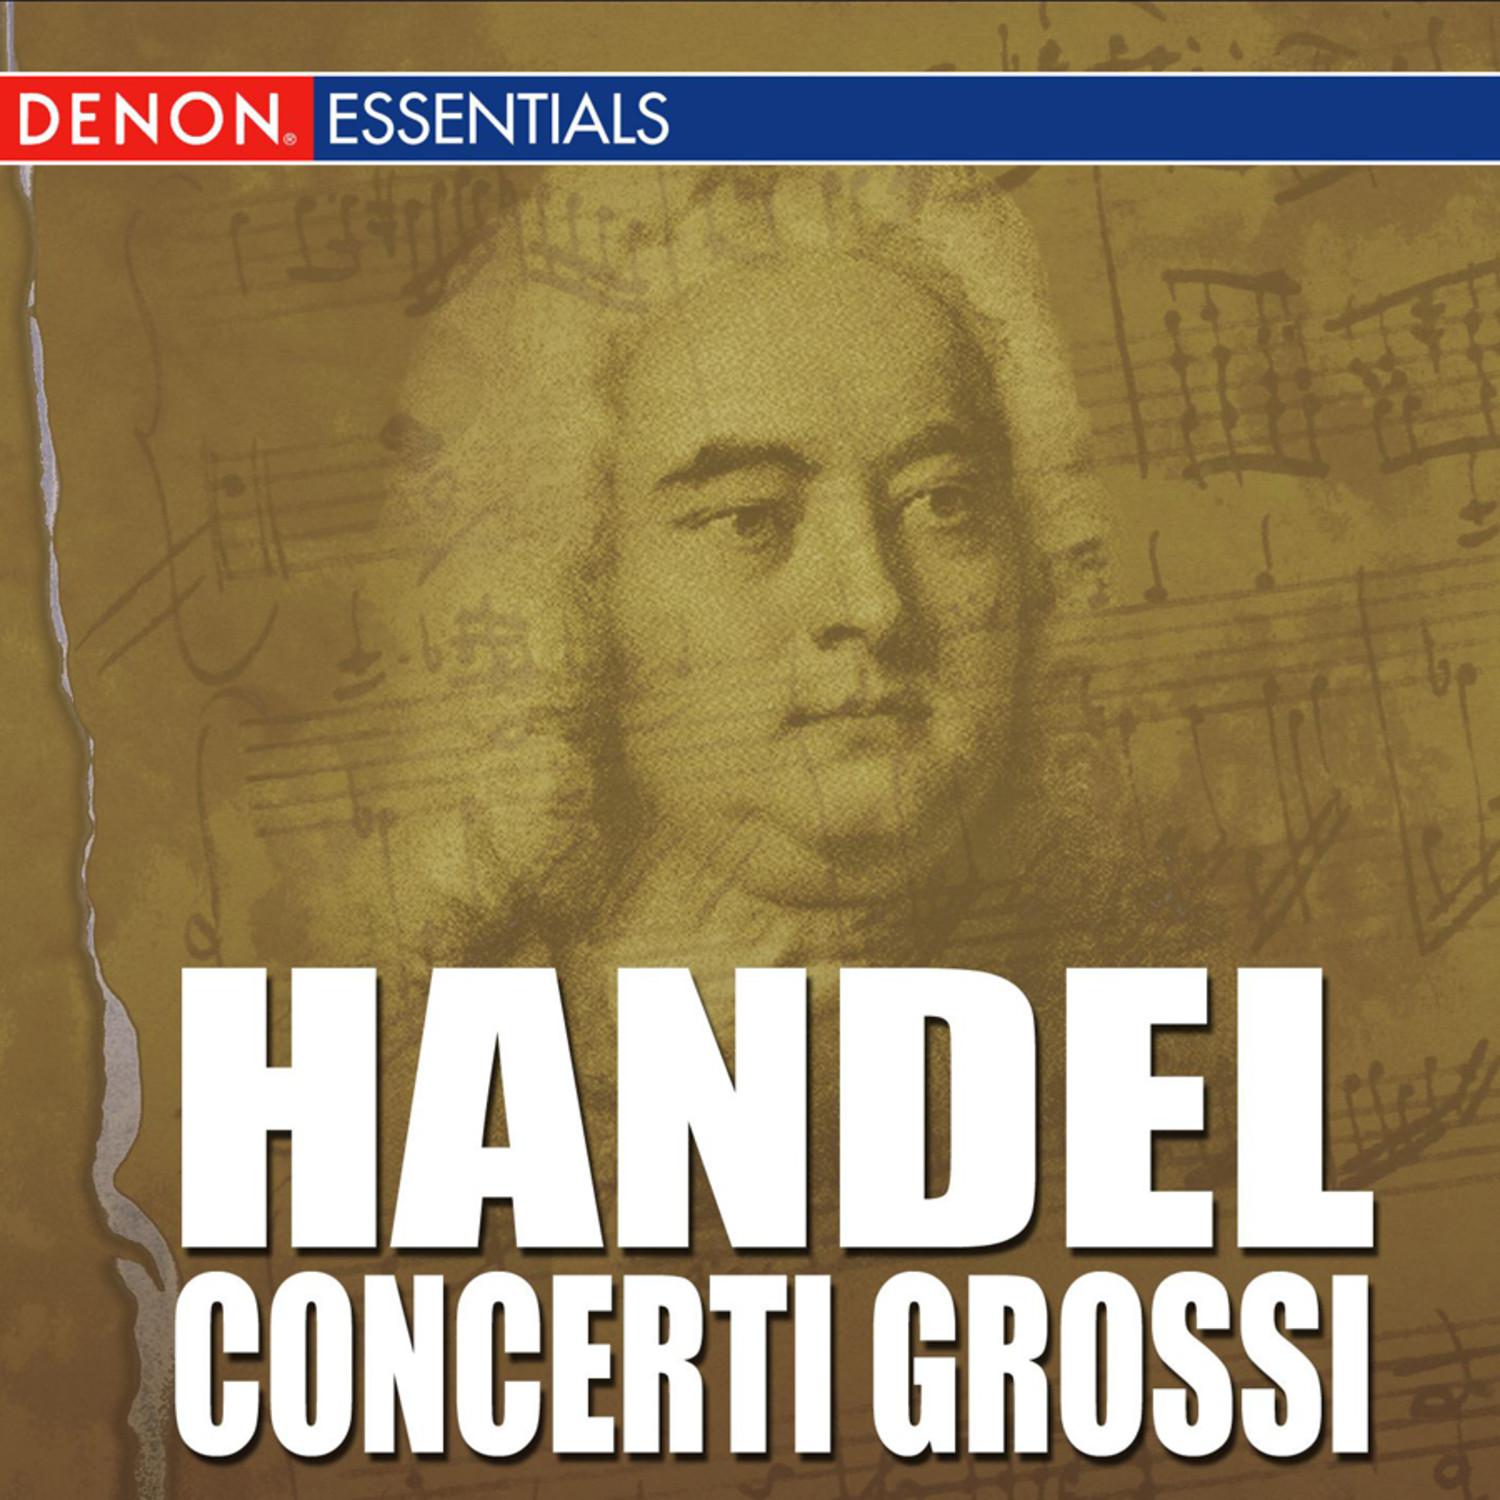 Concerto Grosso, Op. 6: No. 5 in D Major, HWV 323: VI. Menuet